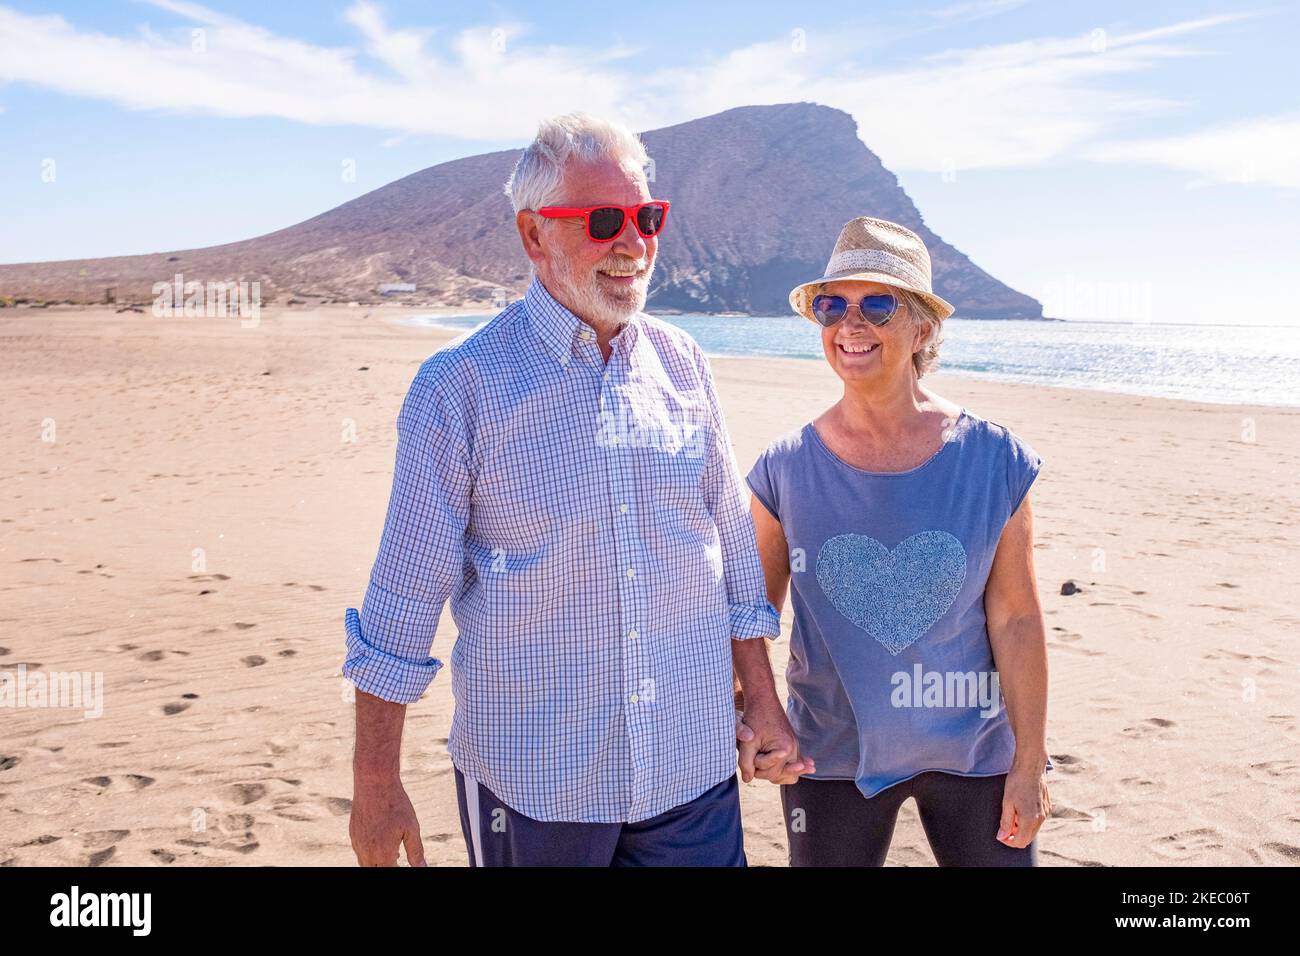 coppia di anziani maturi che hanno divertimento camminando sulla sabbia della spiaggia insieme godendo le loro vacanze e vacanza o viaggio all'aperto con il mare o l'oceano sullo sfondo - due anziani innamorati divertirsi Foto Stock